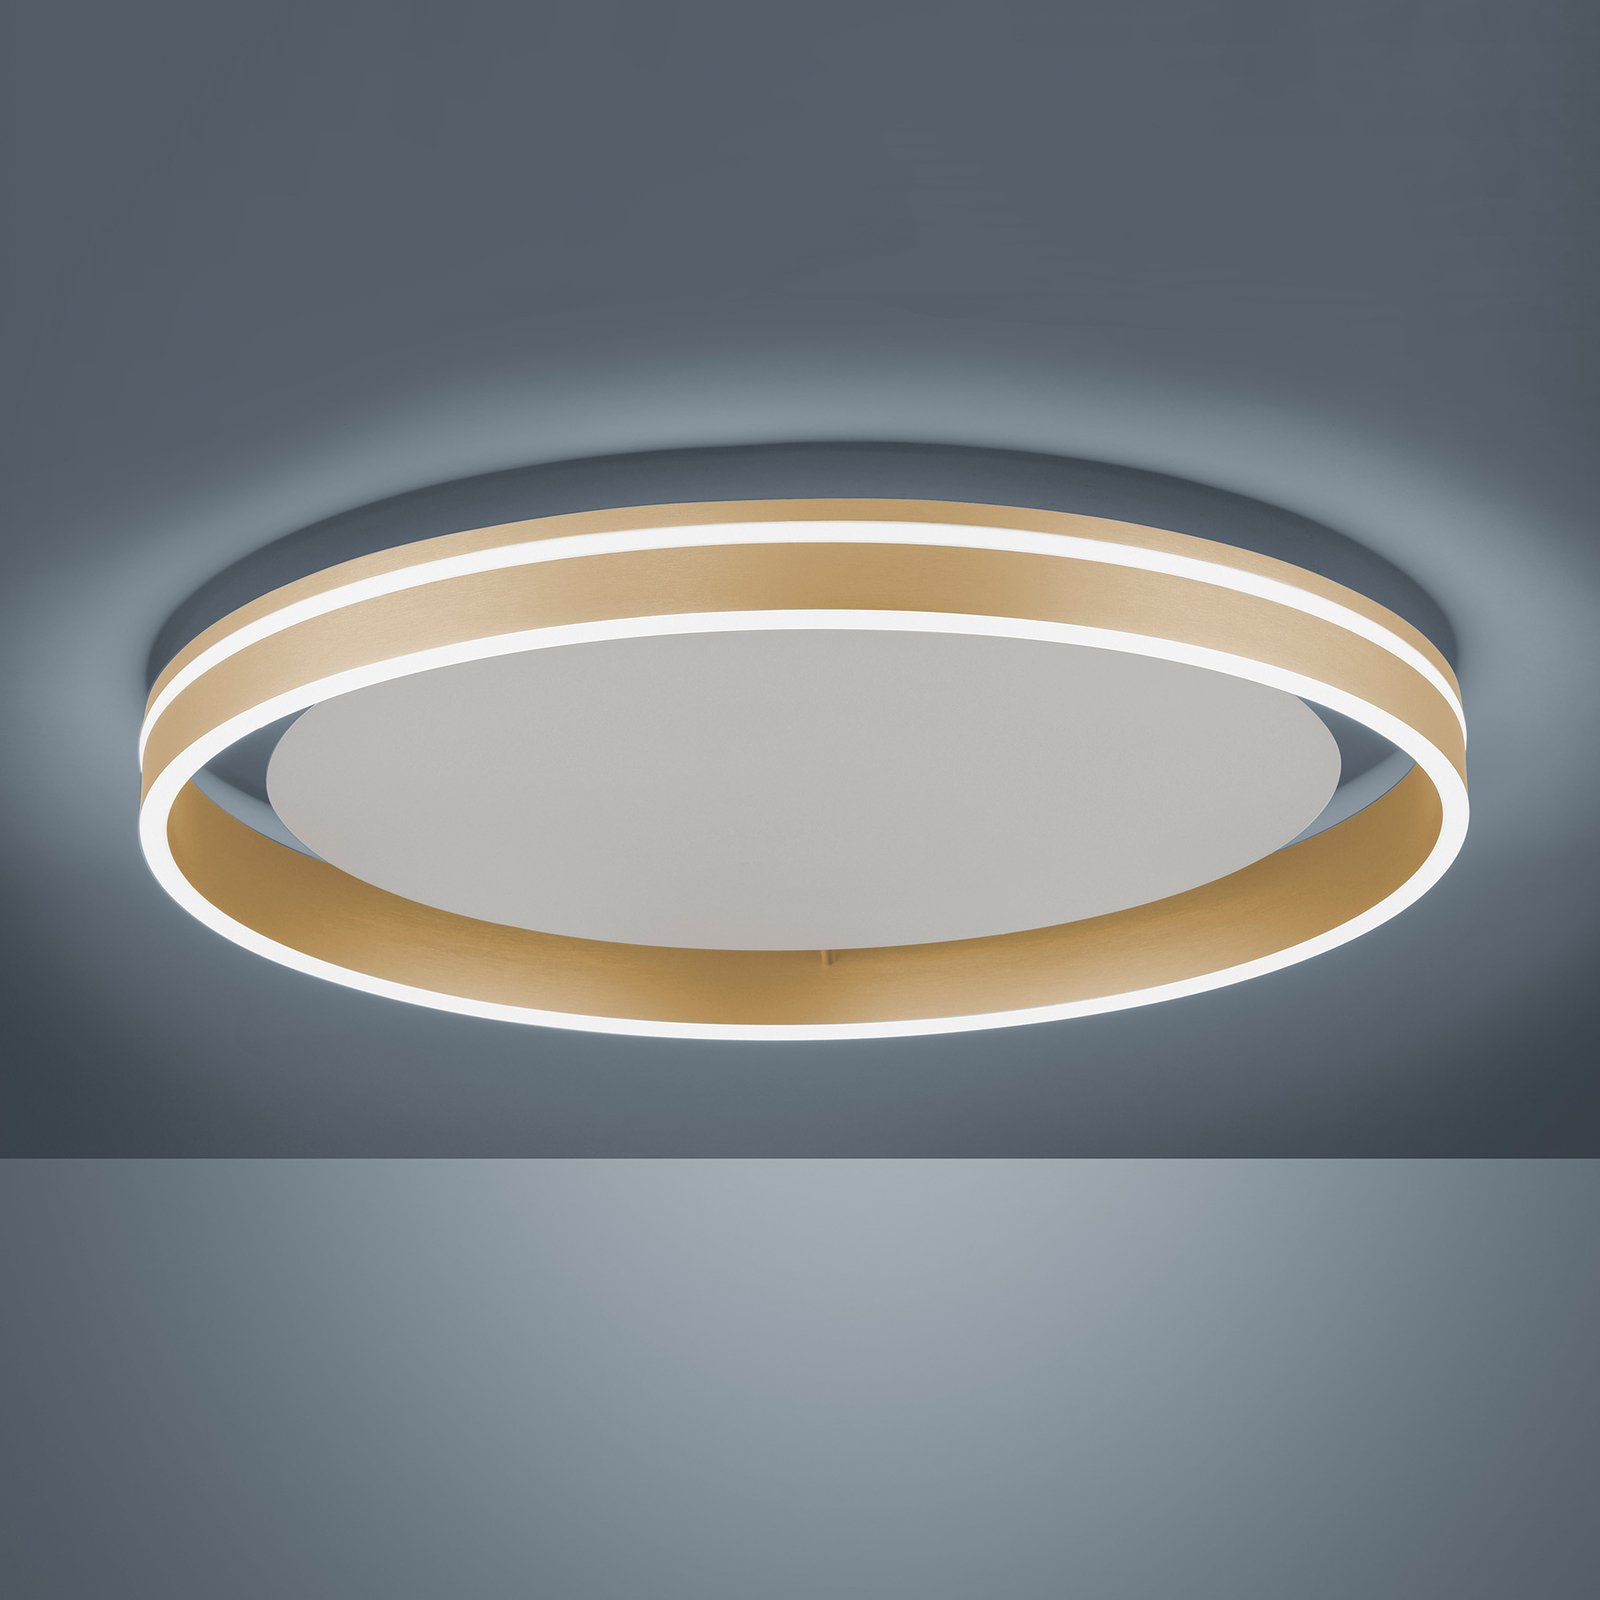 Paul Neuhaus Q-VITO LED plafondlamp, Ø 60cm